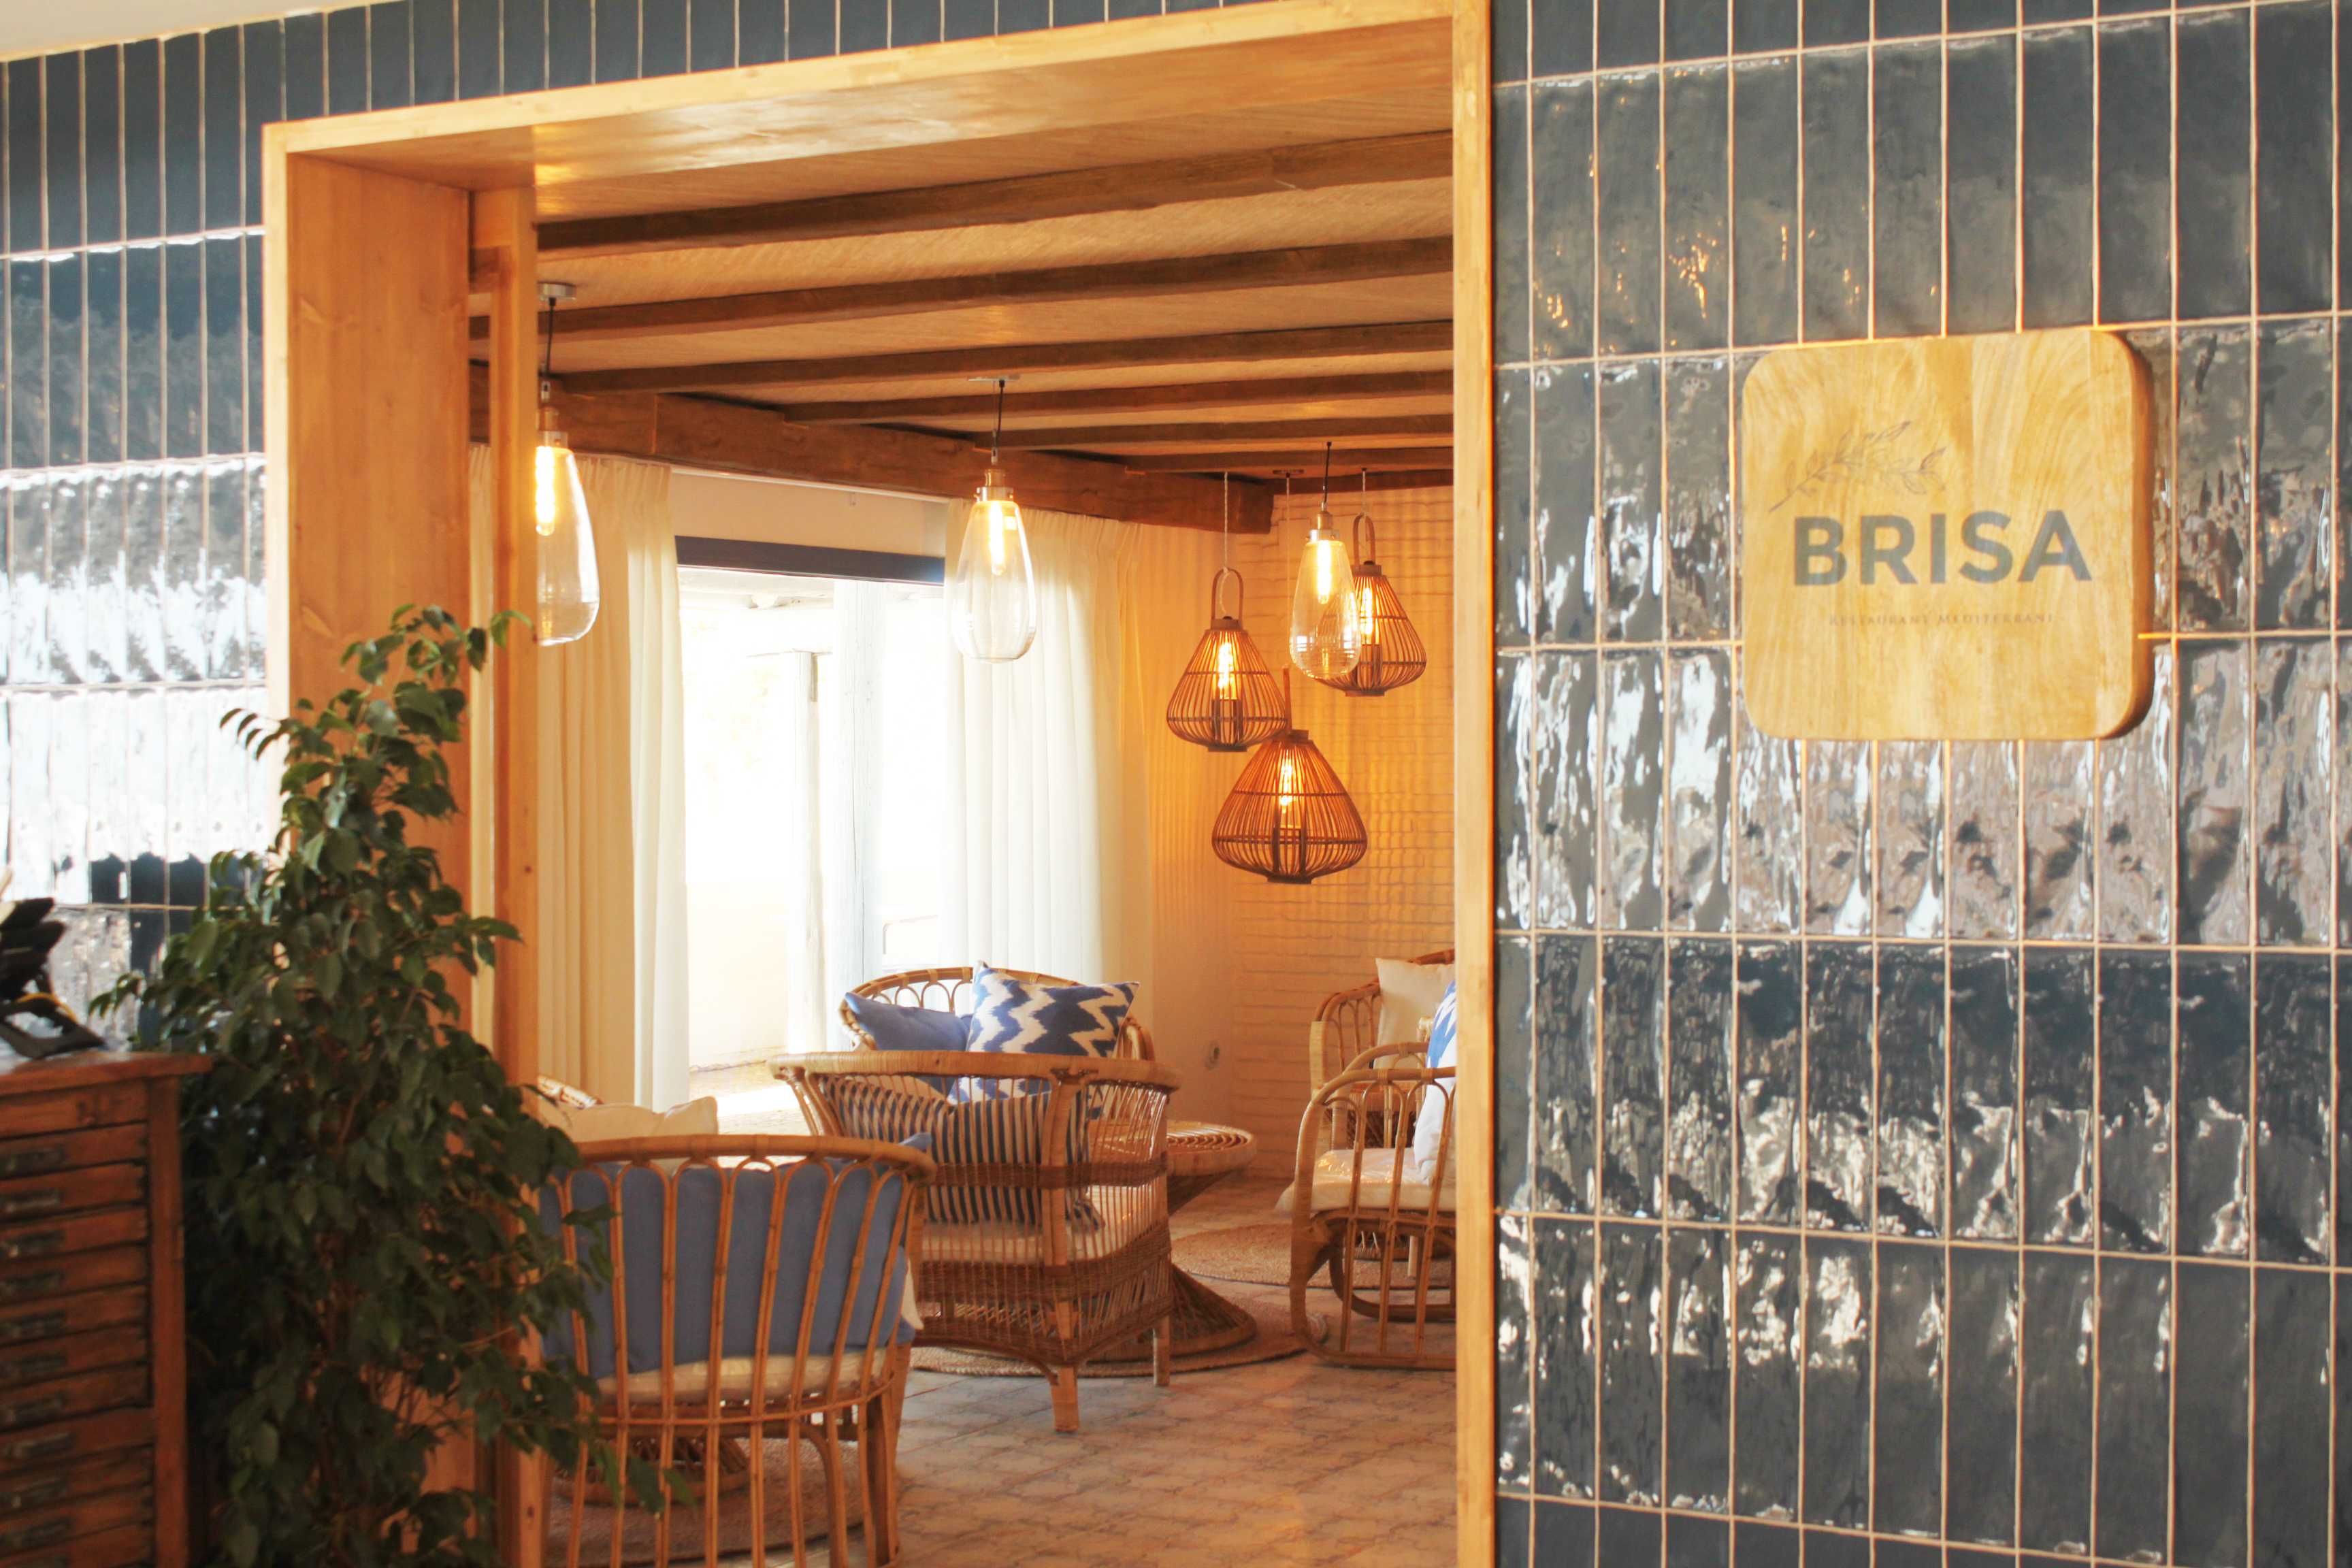 Viu la teva experiència gastronòmica a Brisa Restaurant!